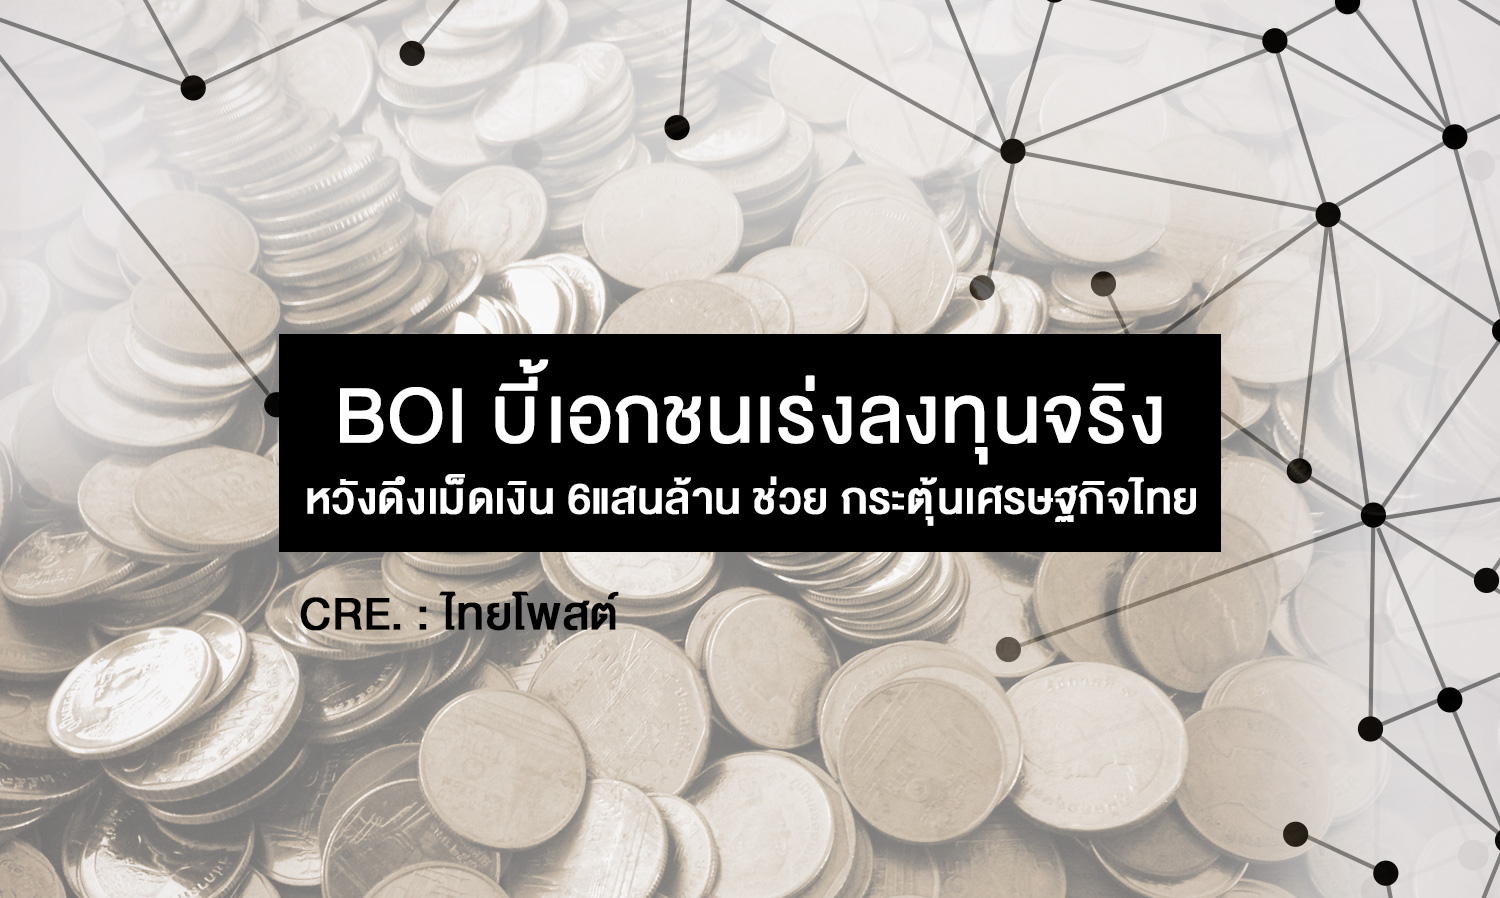 BOI บี้เอกชนเร่งลงทุนจริง หวังดึงเม็ดเงิน 6แสนล้าน ช่วย กระตุ้นเศรษฐกิจไทย